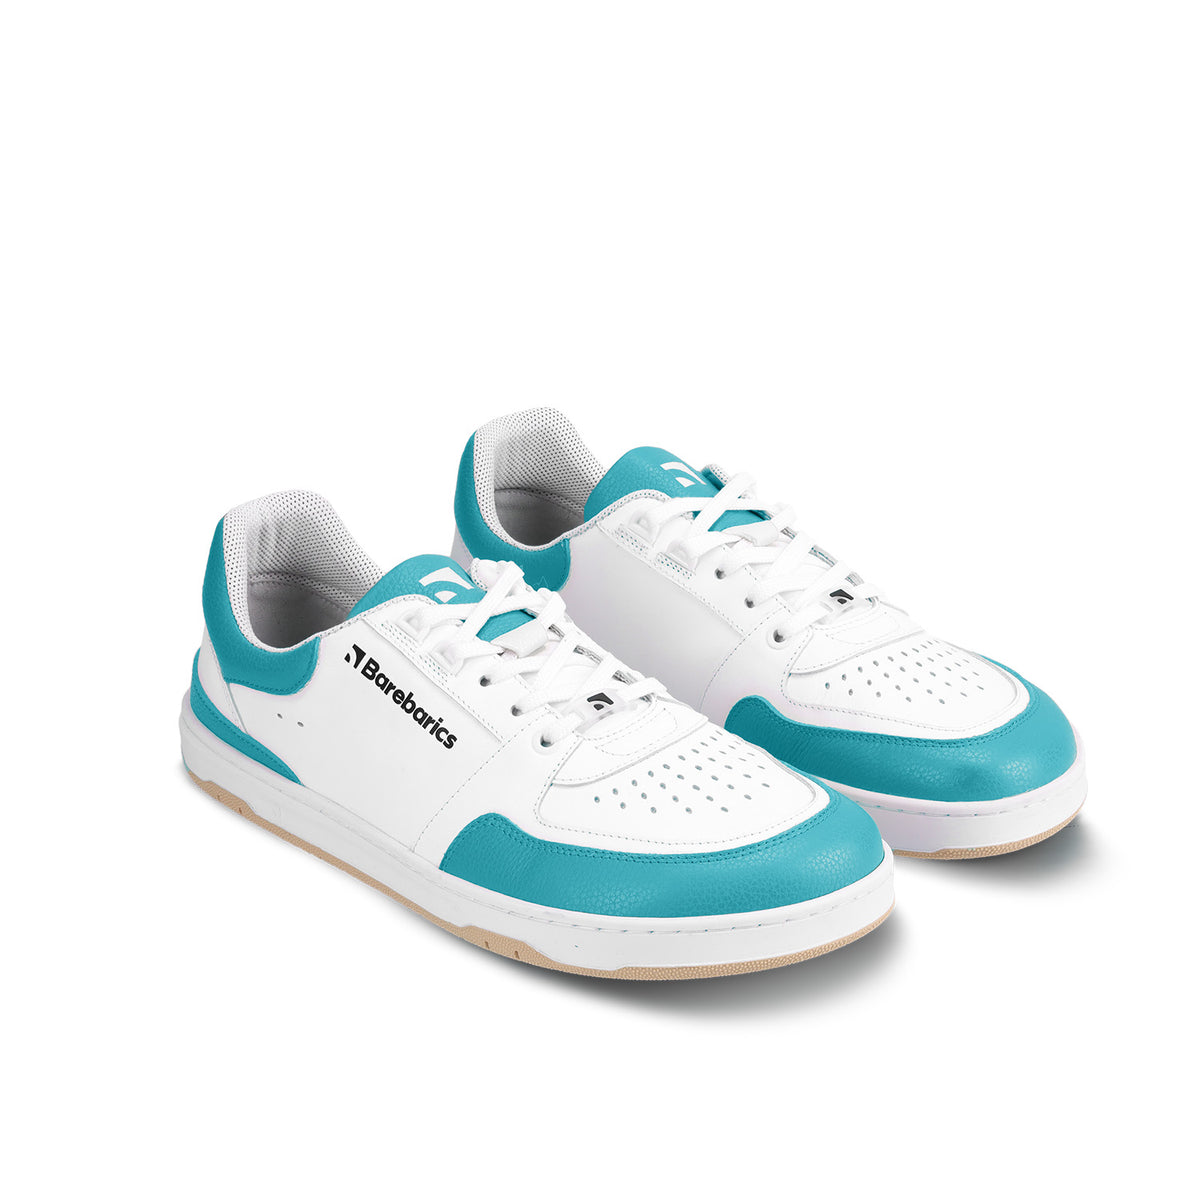 Barefoot Sneakers Barebarics Wave - White & Dark Turquoise 4  - OzBarefoot